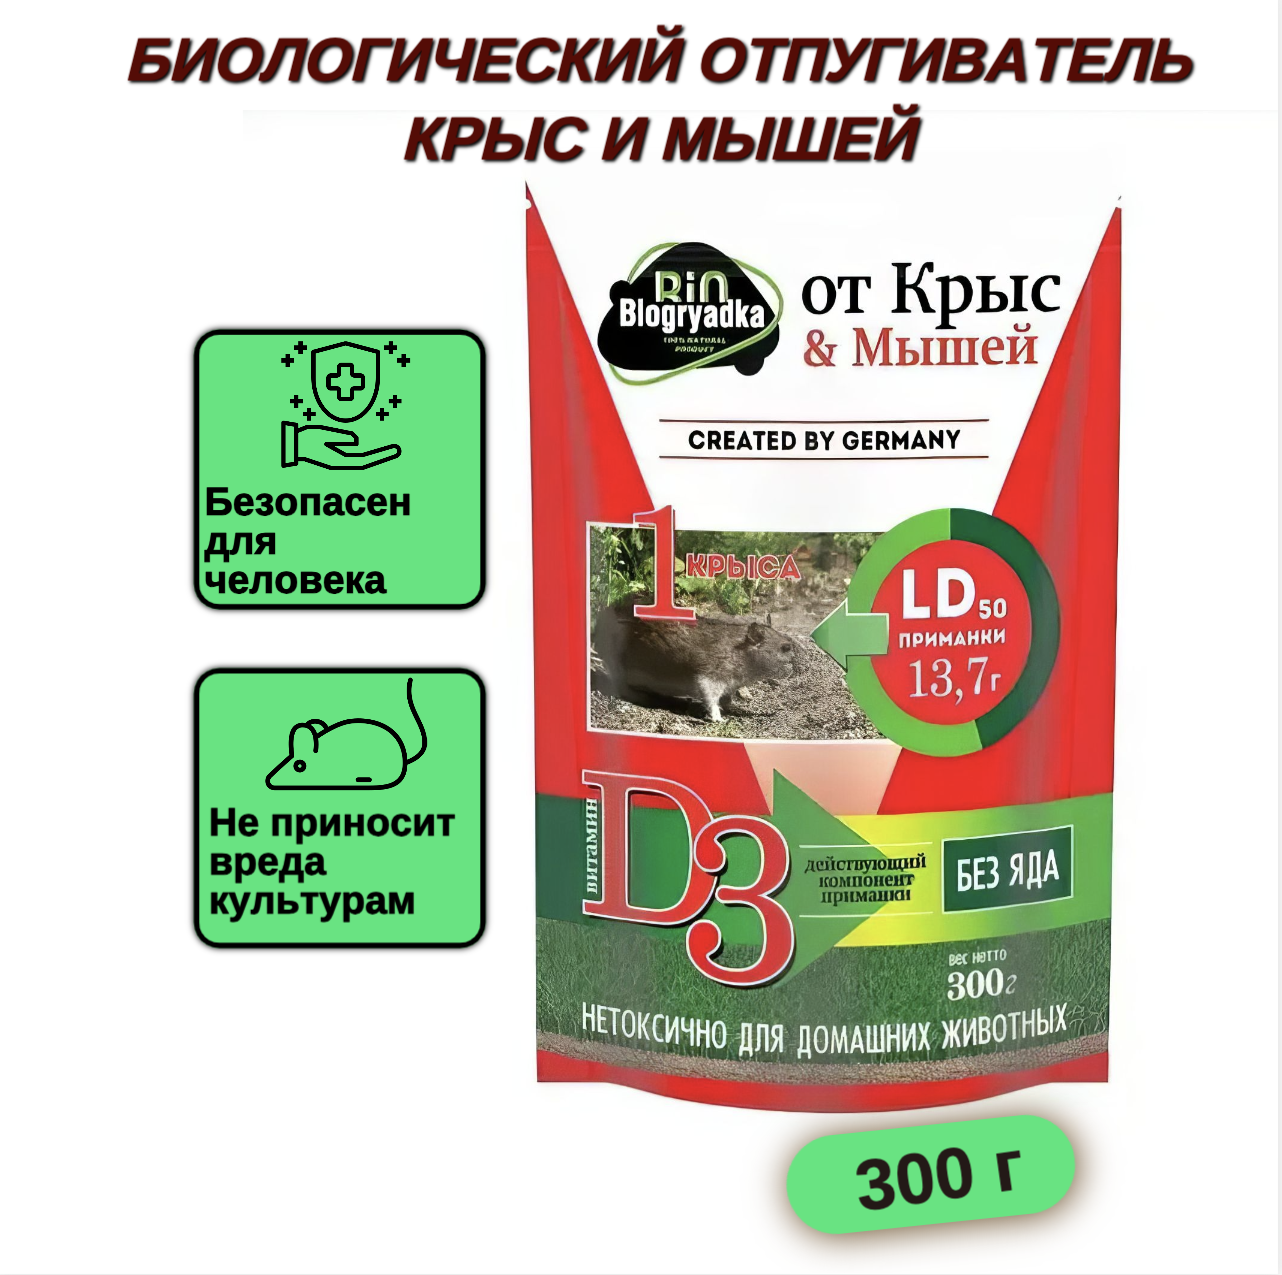 BioGryadka Биологический отпугиватель крыс и мышей Bio Грядка 300 гр - фотография № 1